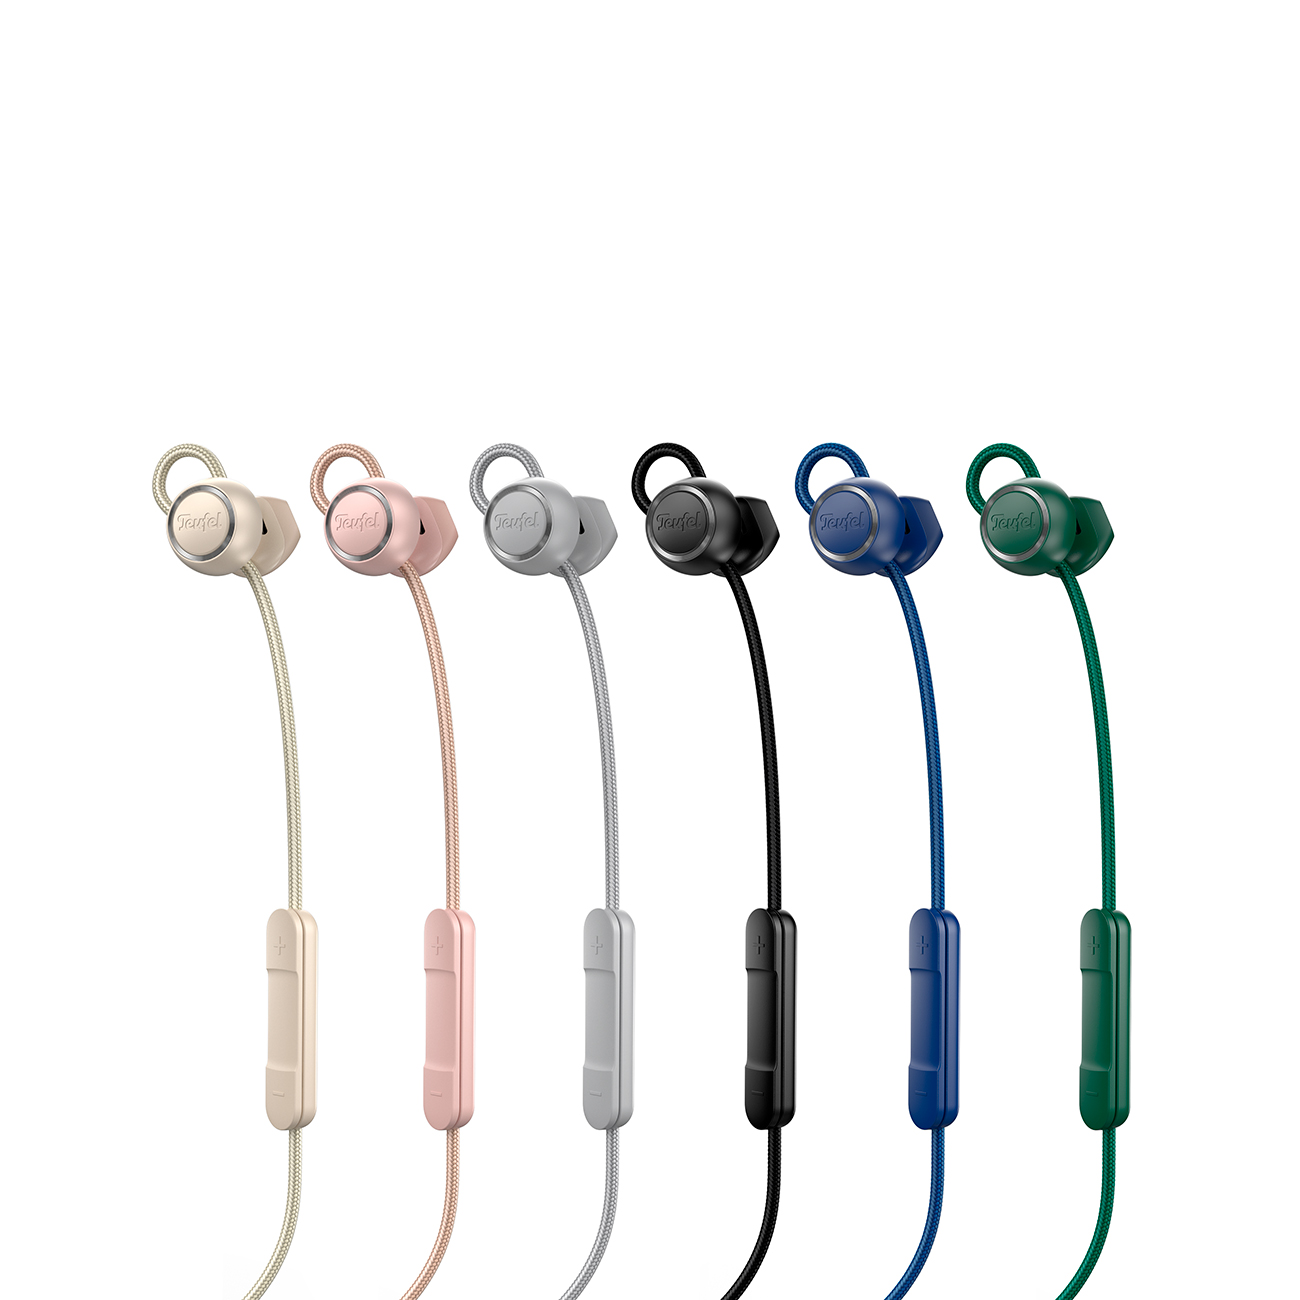 TEUFEL SUPREME IN, Bluetooth Kopfhörer Ivy In-ear Green